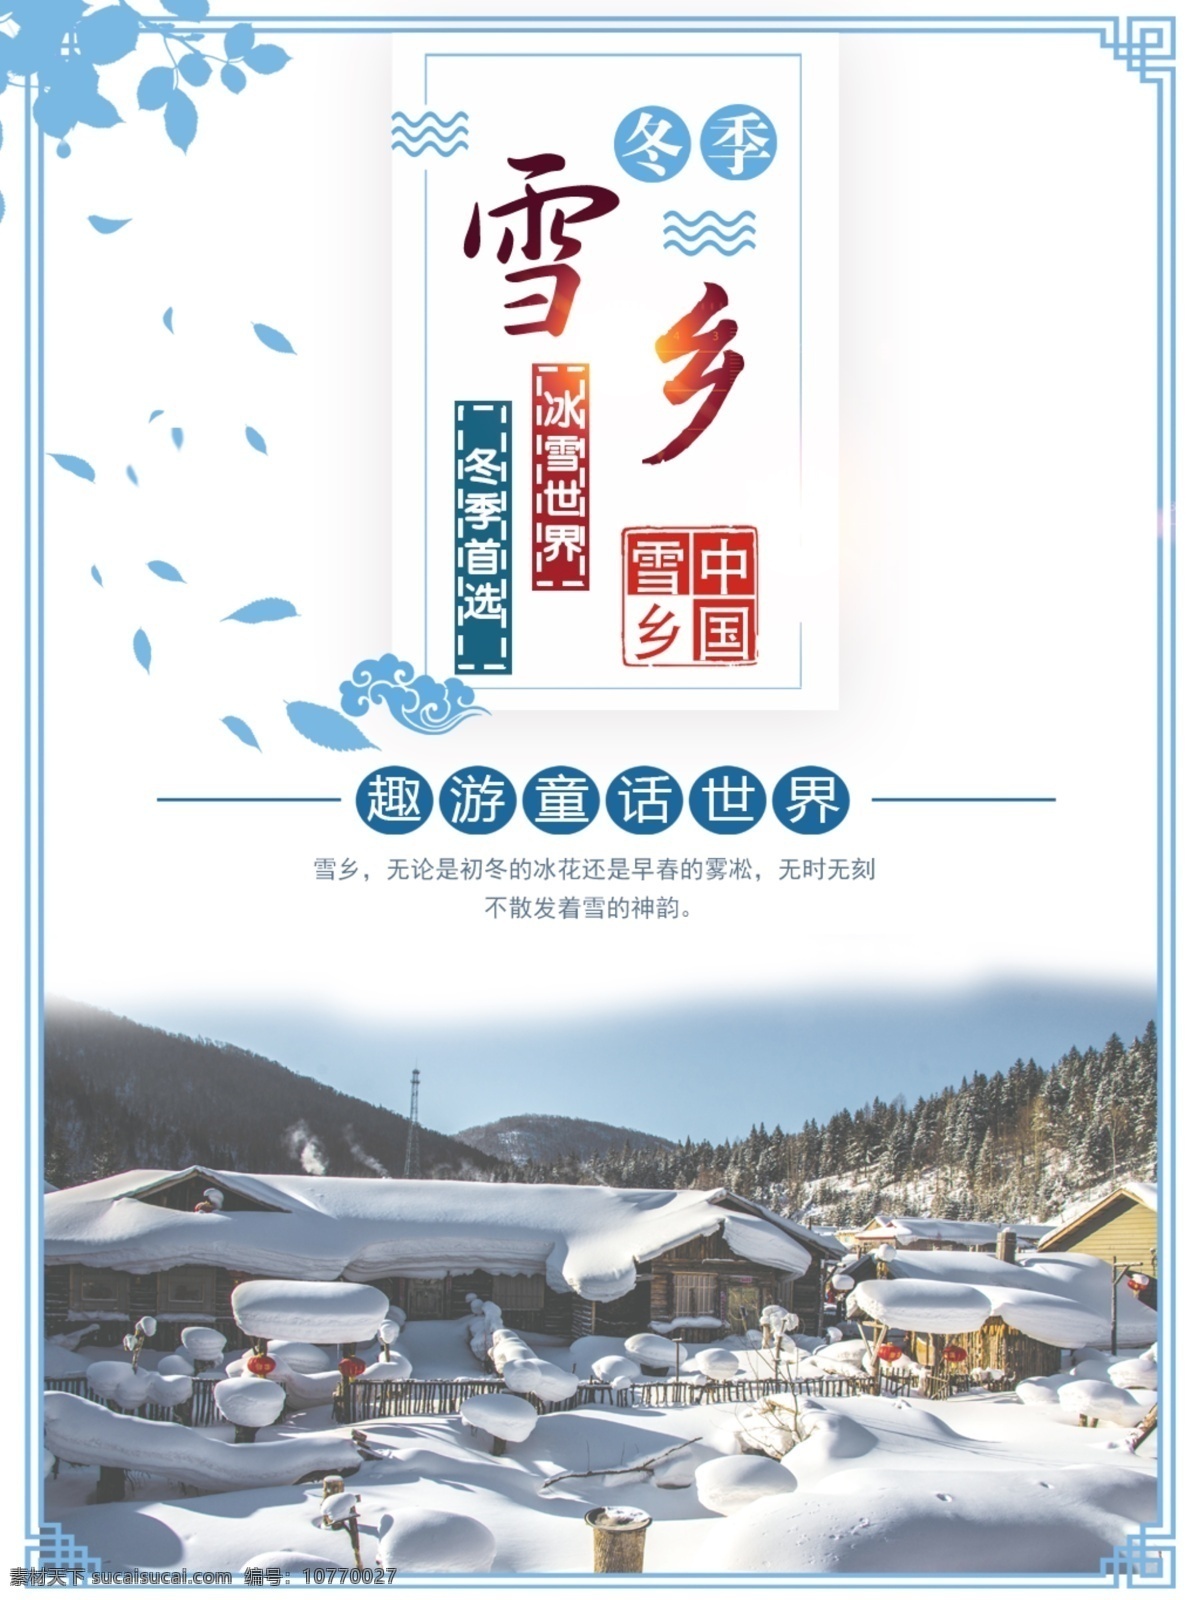 雪乡 旅游 宣传海报 旅游海报 国内旅游 冬季 雪